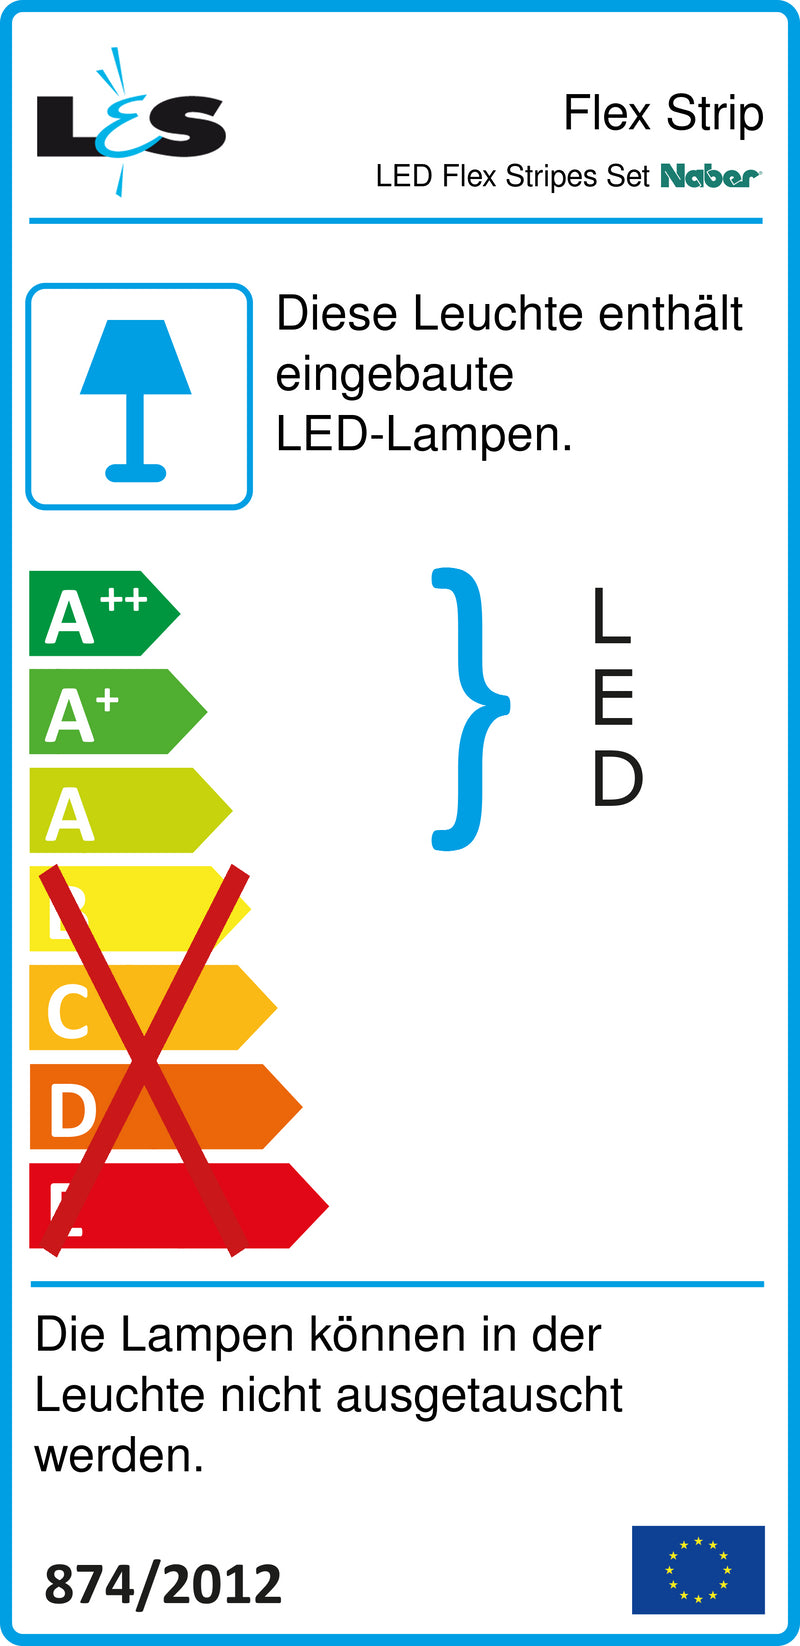 E-Label zu LED Flex Stripes Set als Variante schwarz von Naber GmbH in der Kategorie Lichttechnik in Österreich auf conceptshop.at